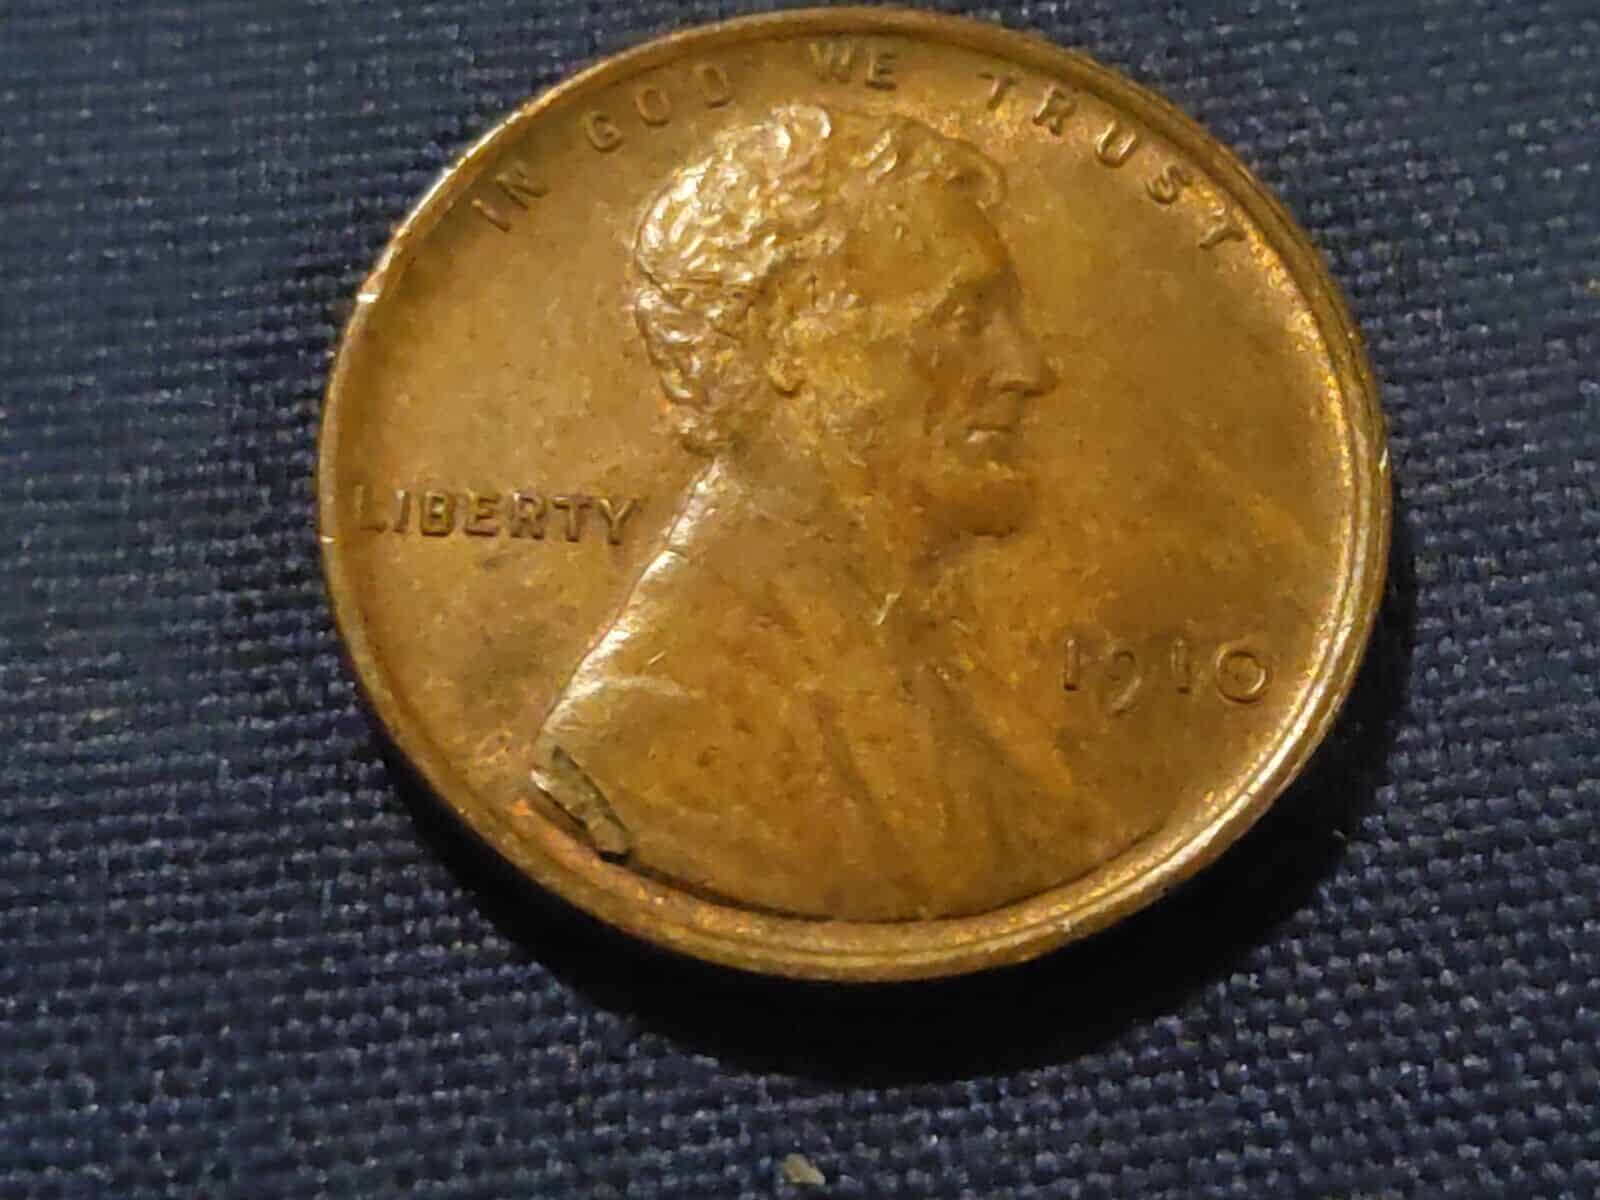 1910 Penny with Die Cracks